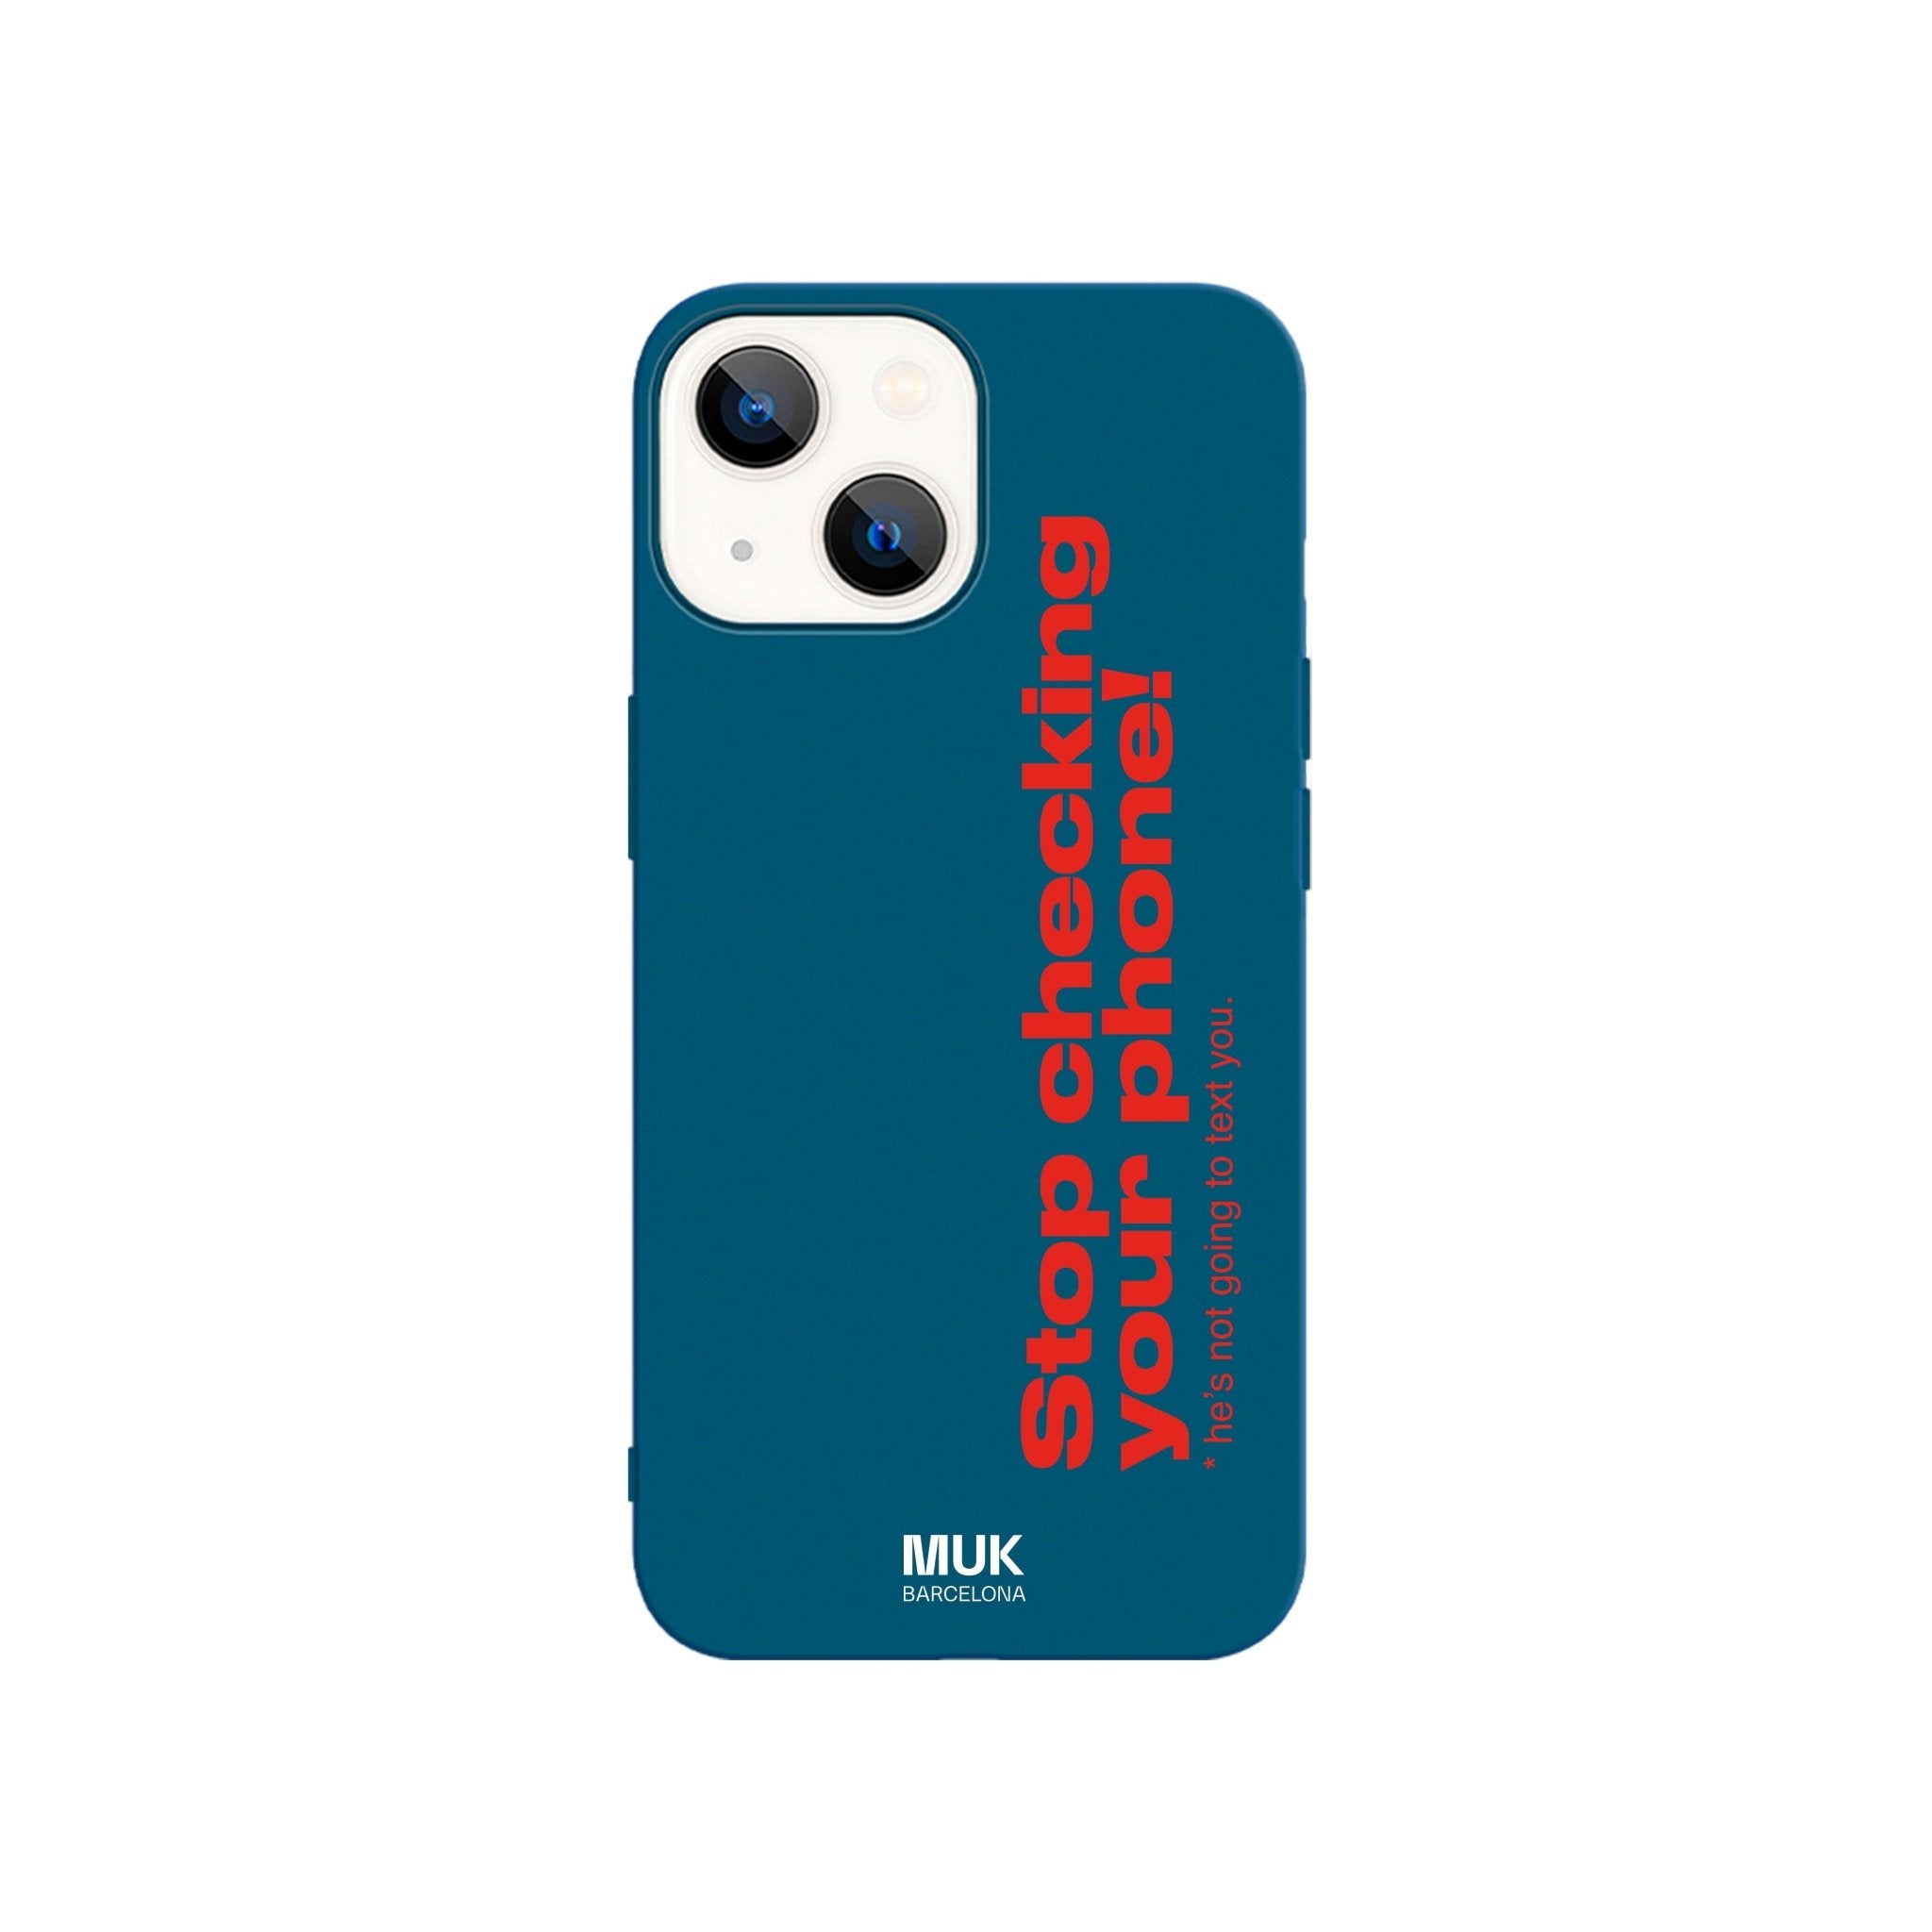 Funda de móvil TPU de color azul con texto “Stop checking your phone! He is not going to text you.” en color rojo.
